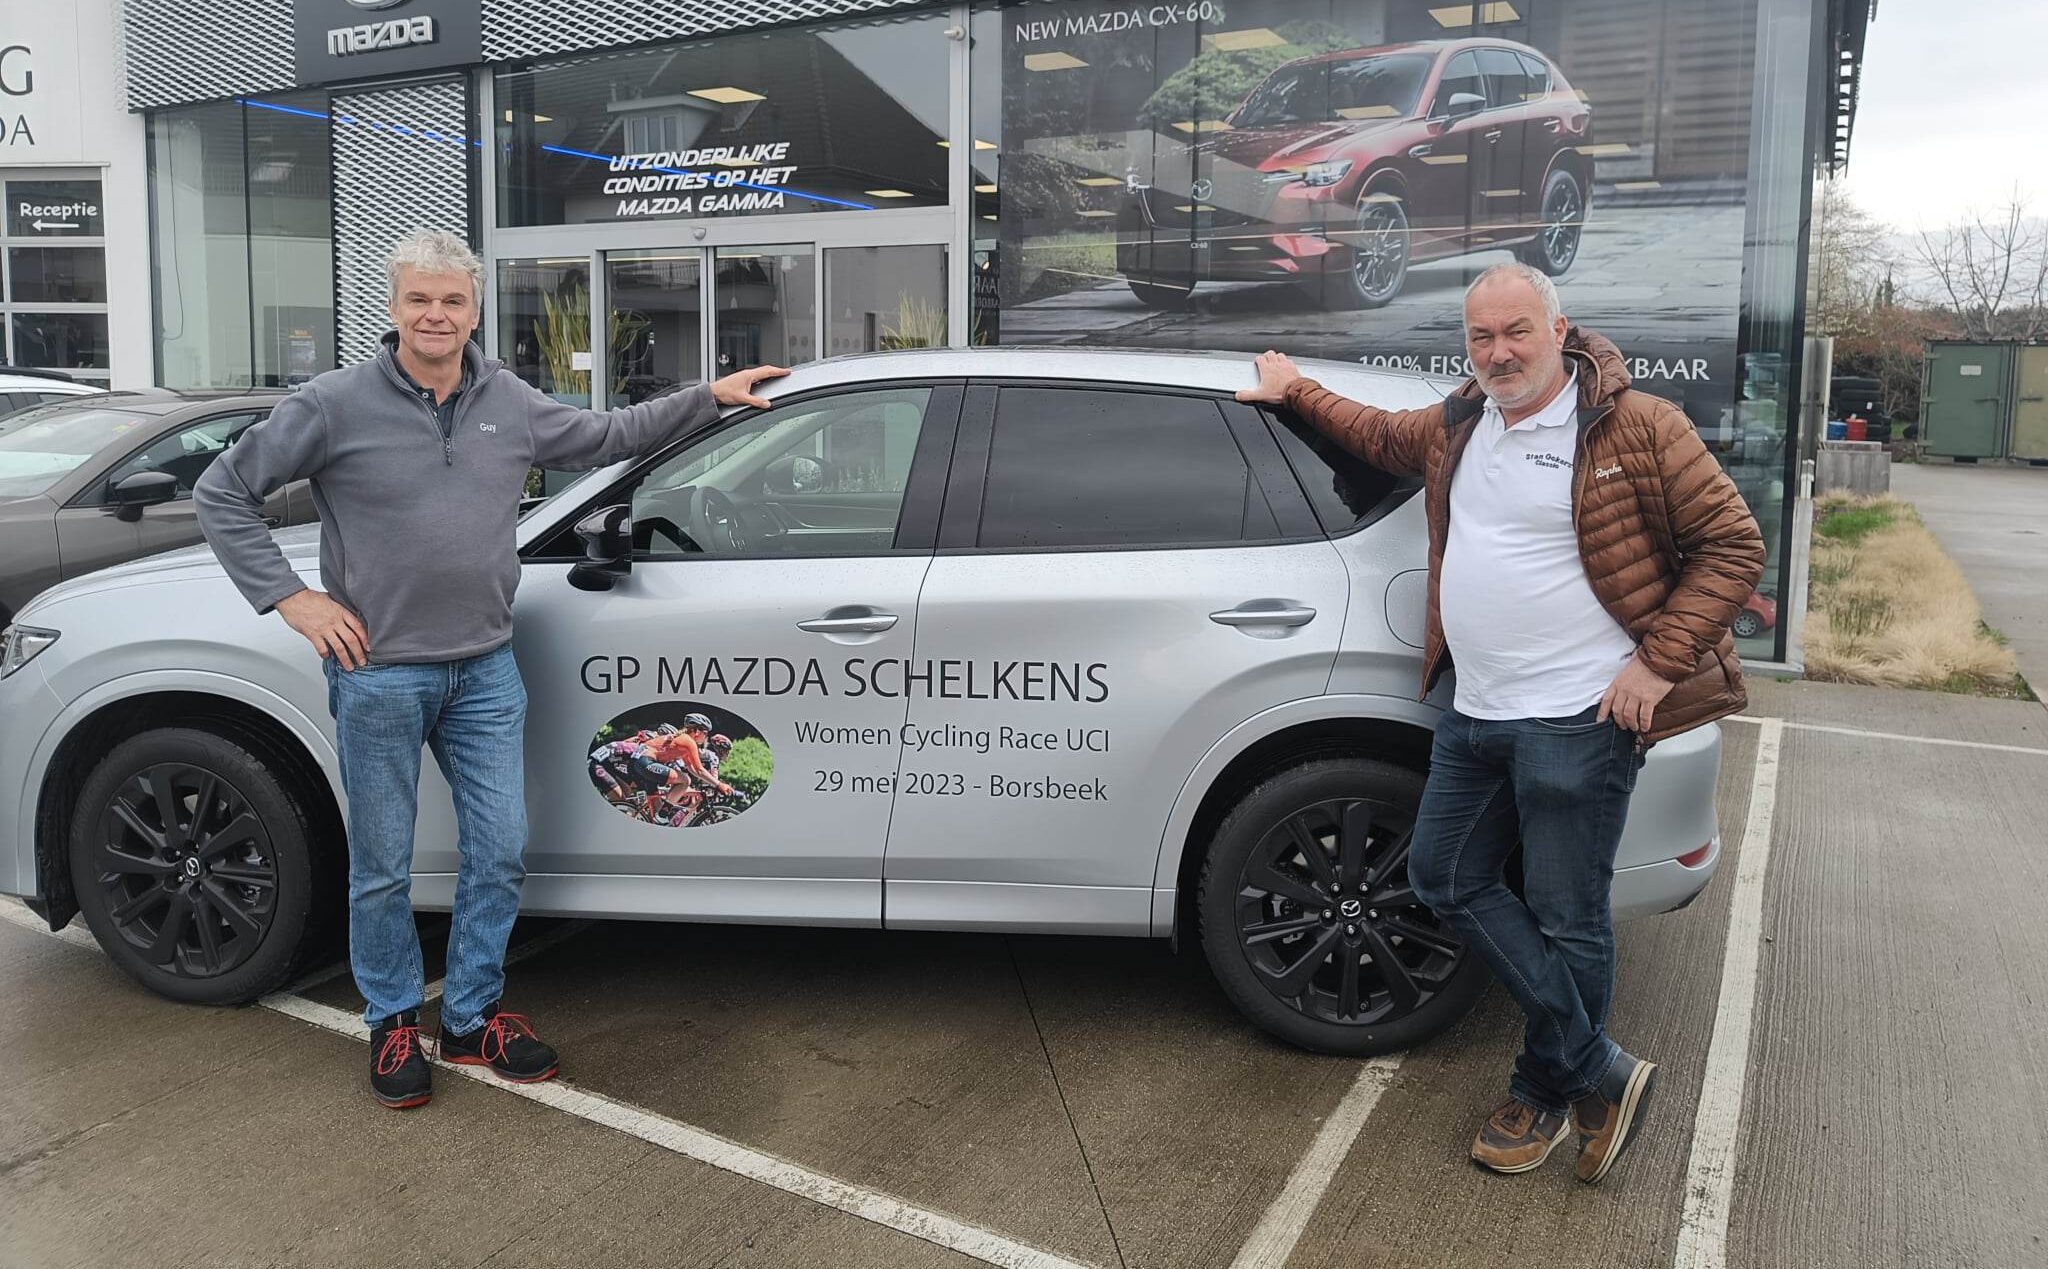 Tweede GP Mazda Schelkens zorgt voor wielerfeest in Borsbeek